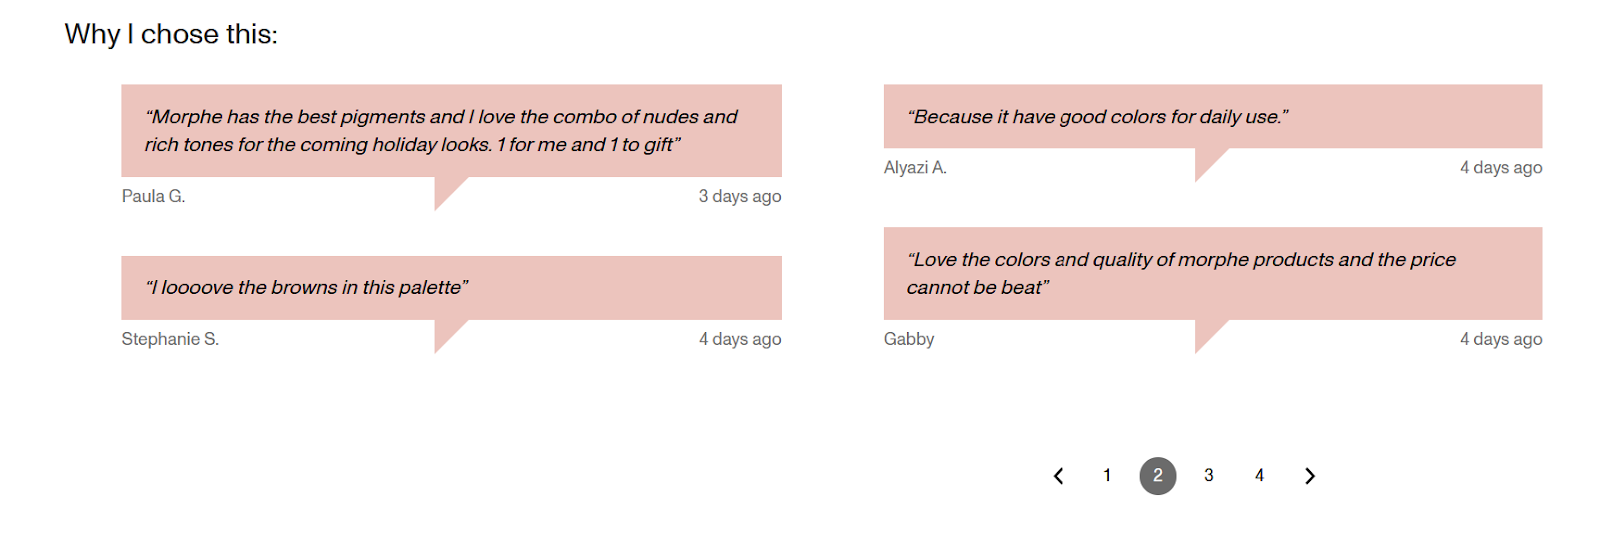 Captures d'écran de bulles de commentaires de paiement partageant les raisons pour lesquelles les clients ont acheté une palette de maquillage